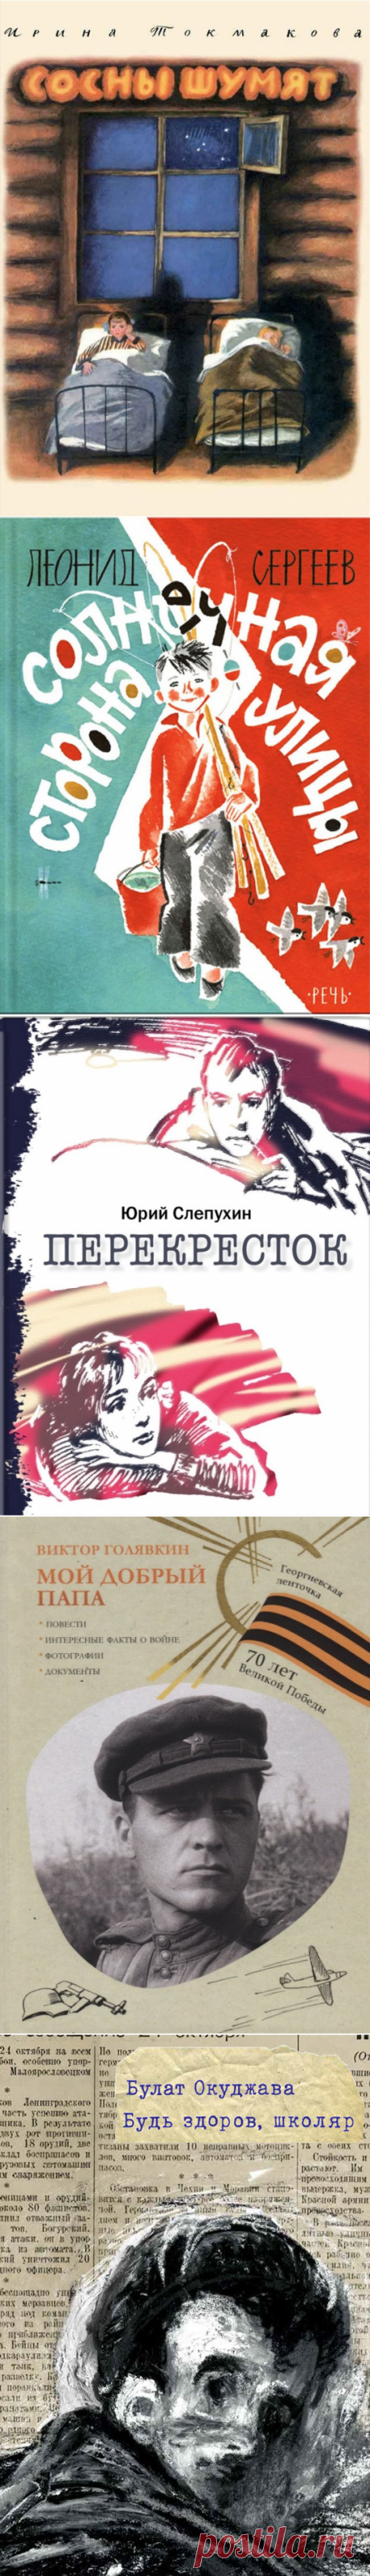 rgdb.ru - 12 книг о Великой Отечественной войне для детей и подростков